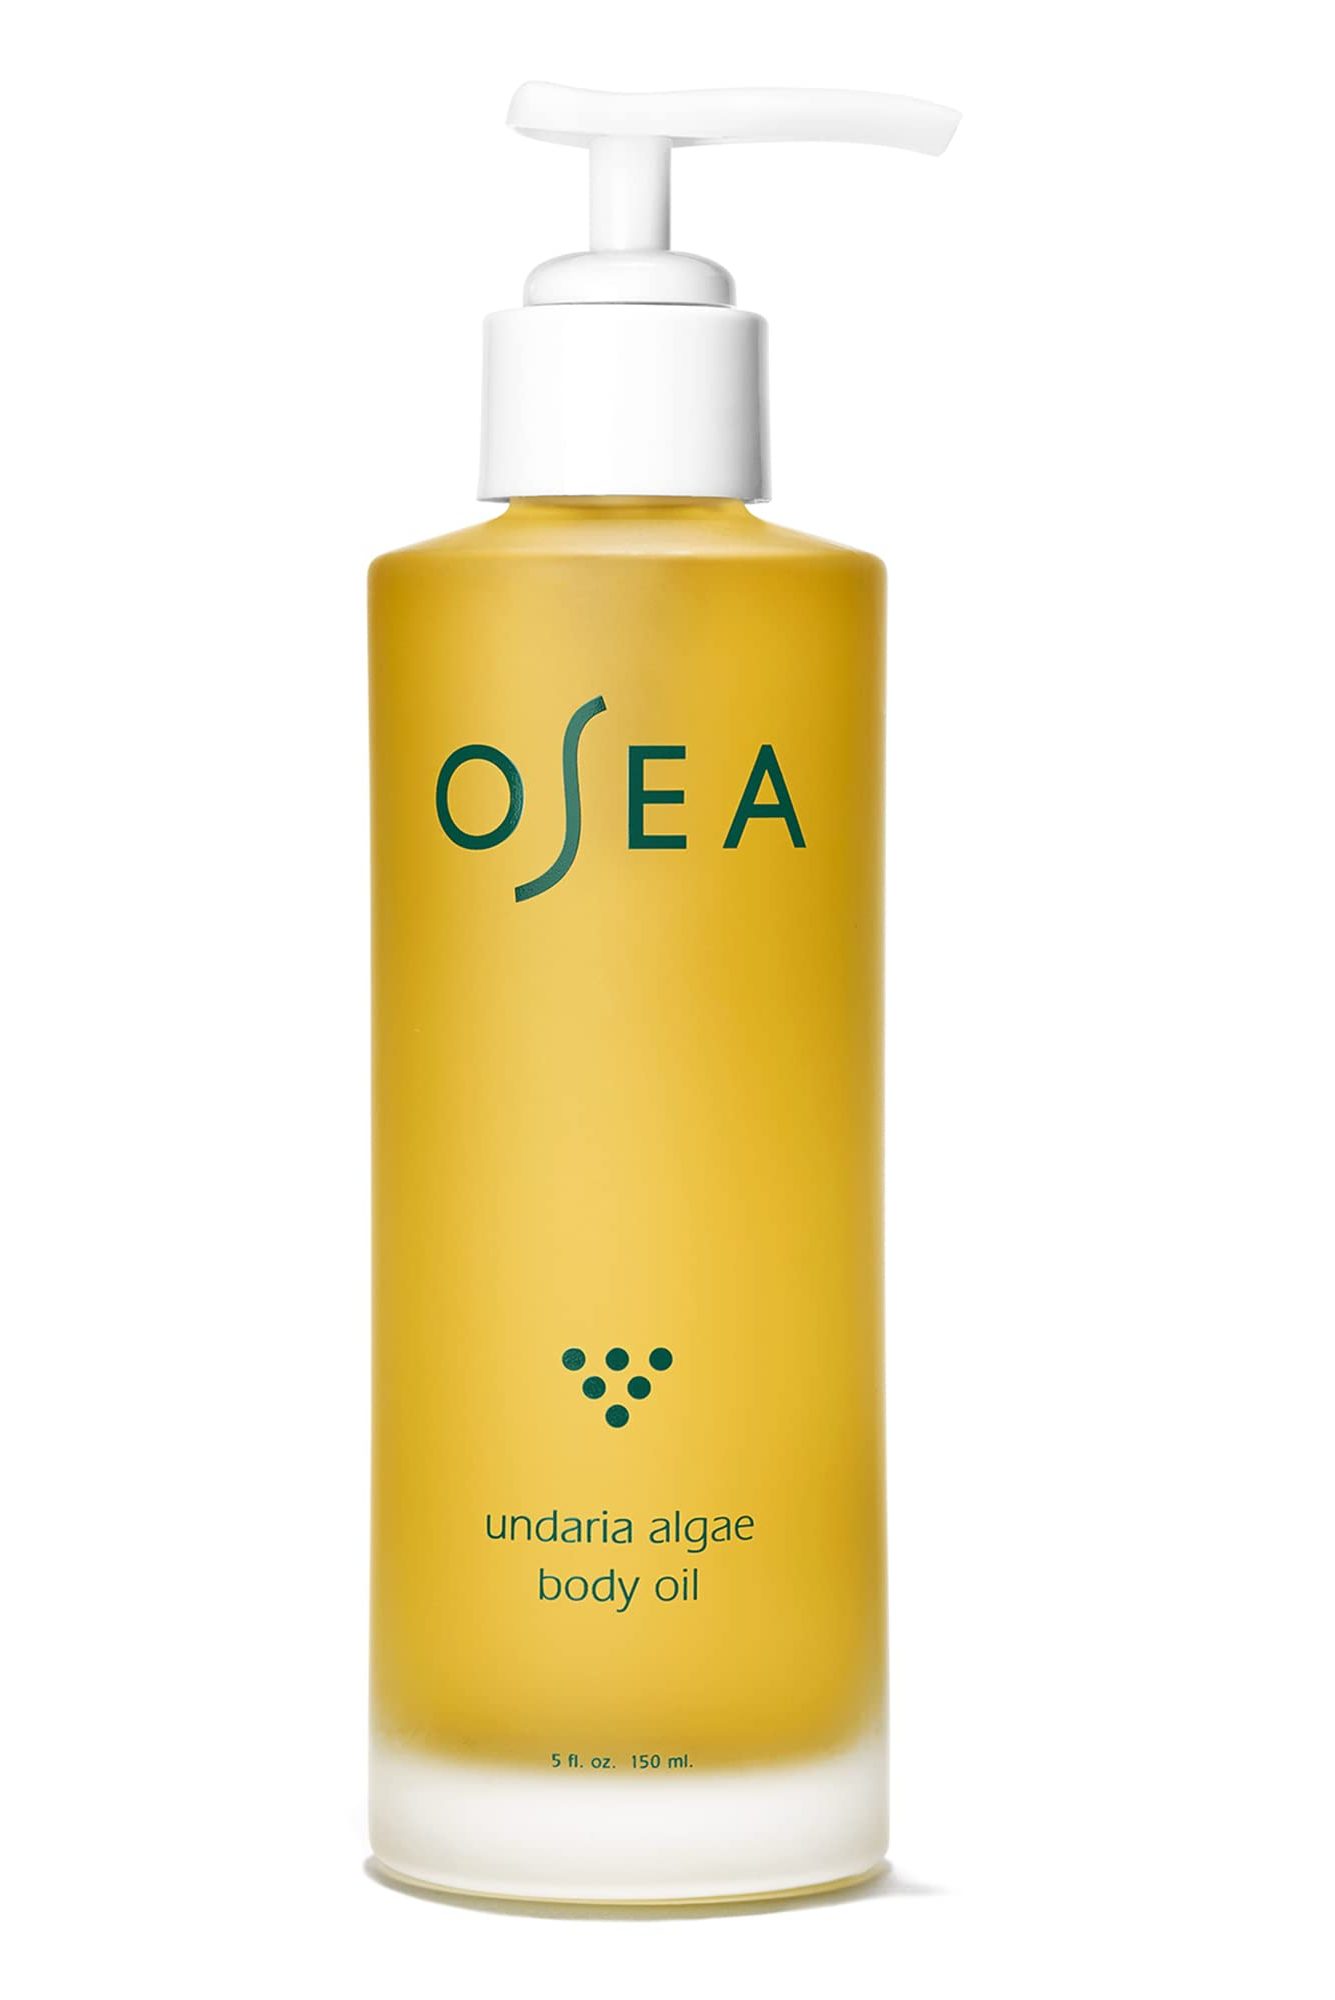 4. OSEA Undaria Algae Body Oil